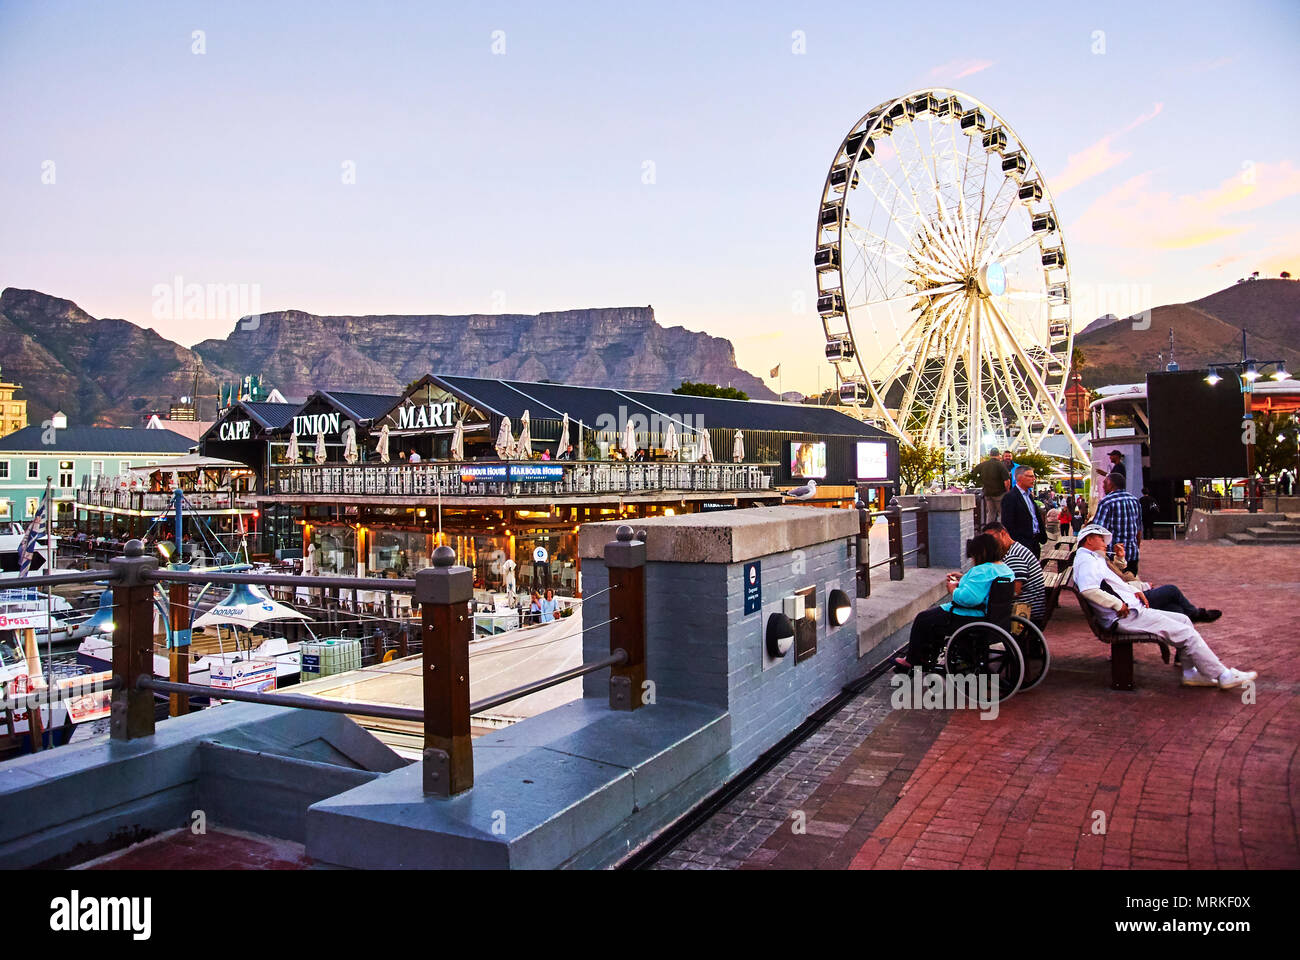 El Victoria & Alfred (V&A Waterfront) en Cape Town está situado en la orilla del Atlántico, Table Bay Harbour, Ciudad del Cabo y Table Mountain. Ad Foto de stock